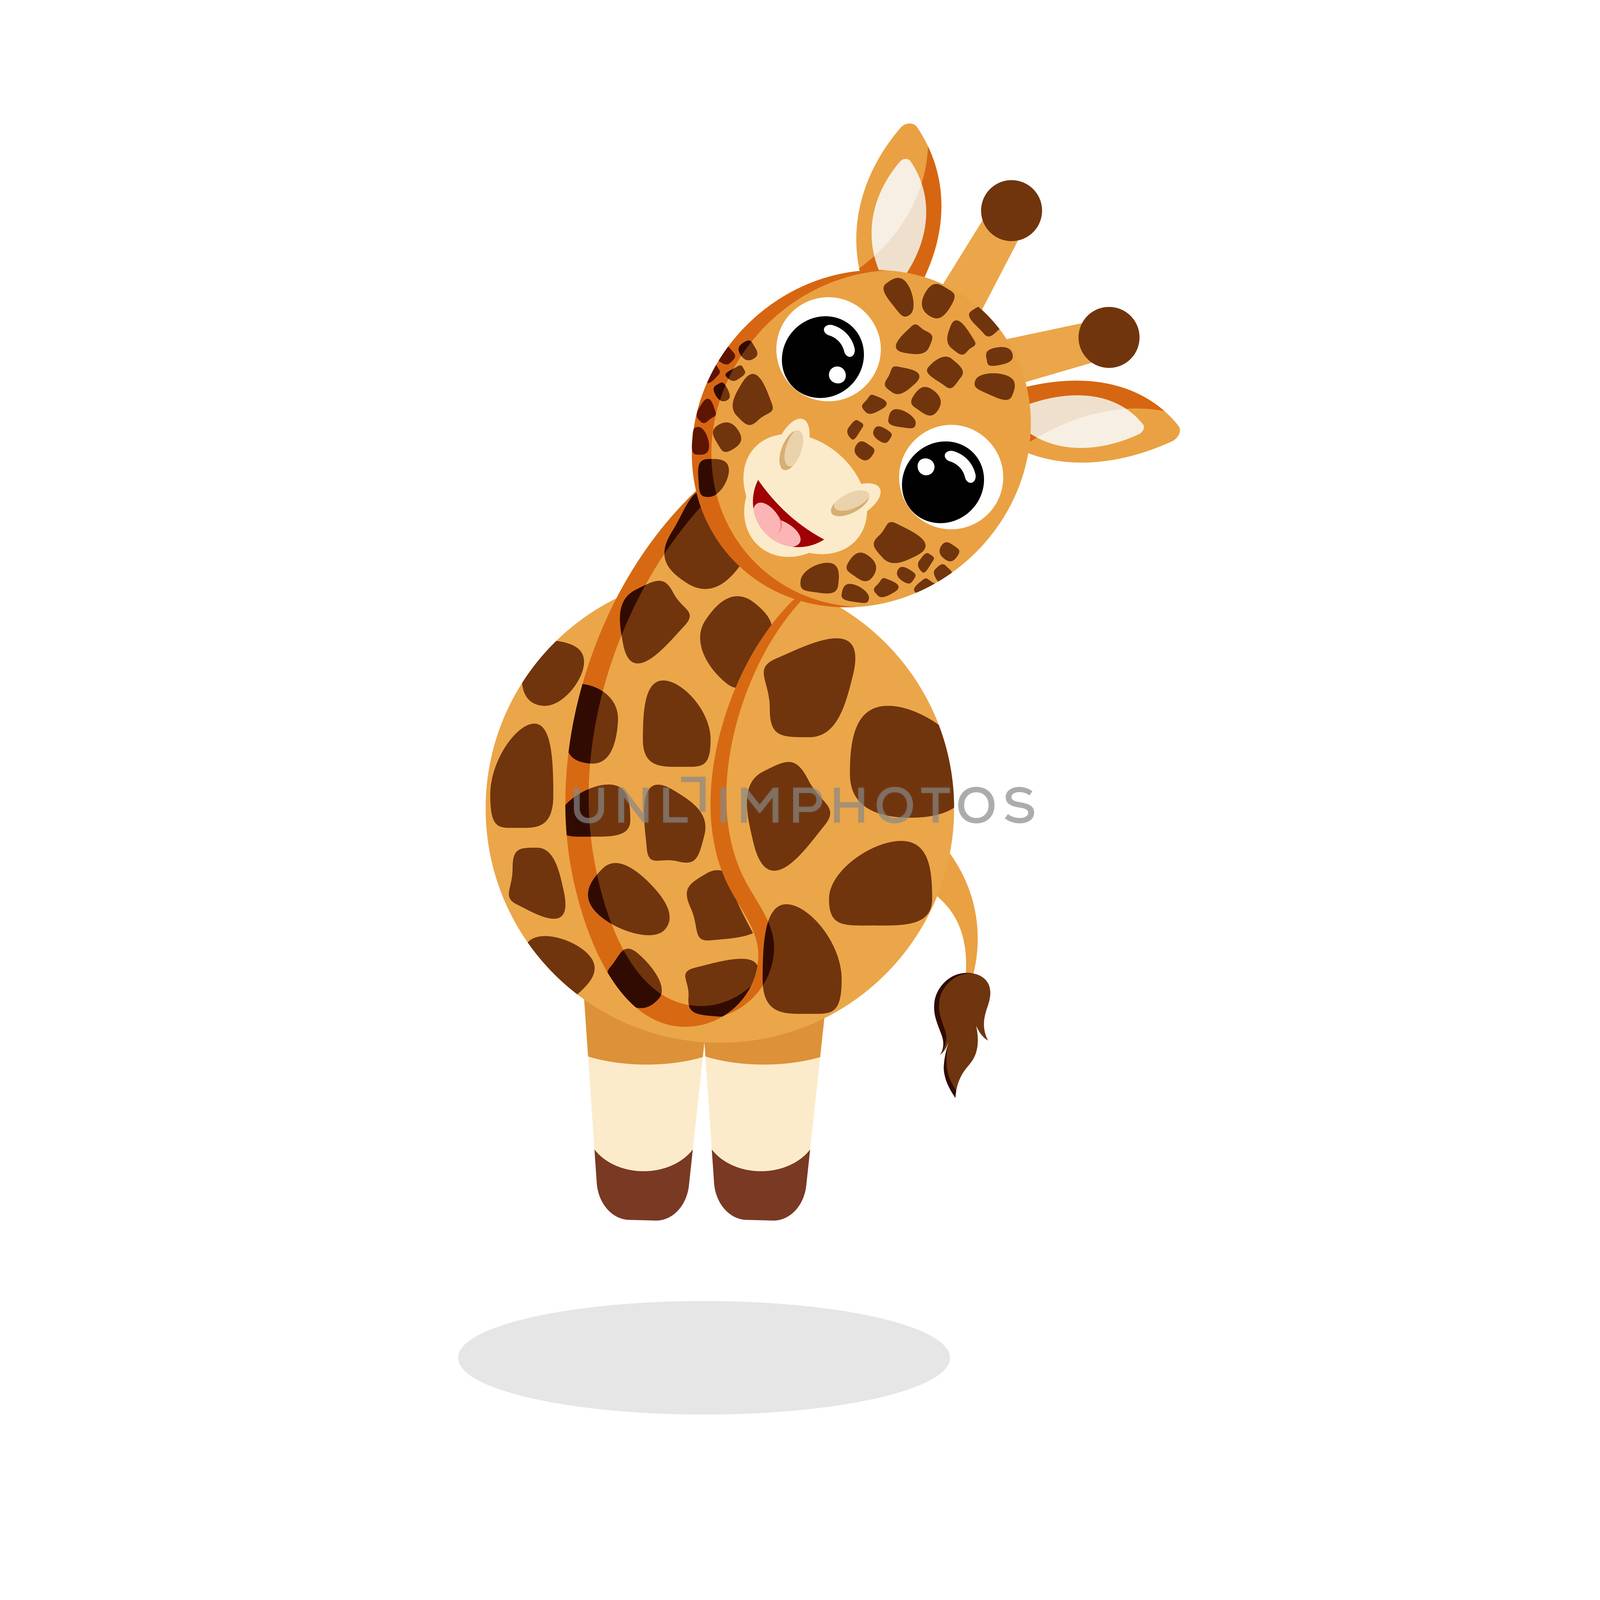 giraffe flat vector by Melnyk